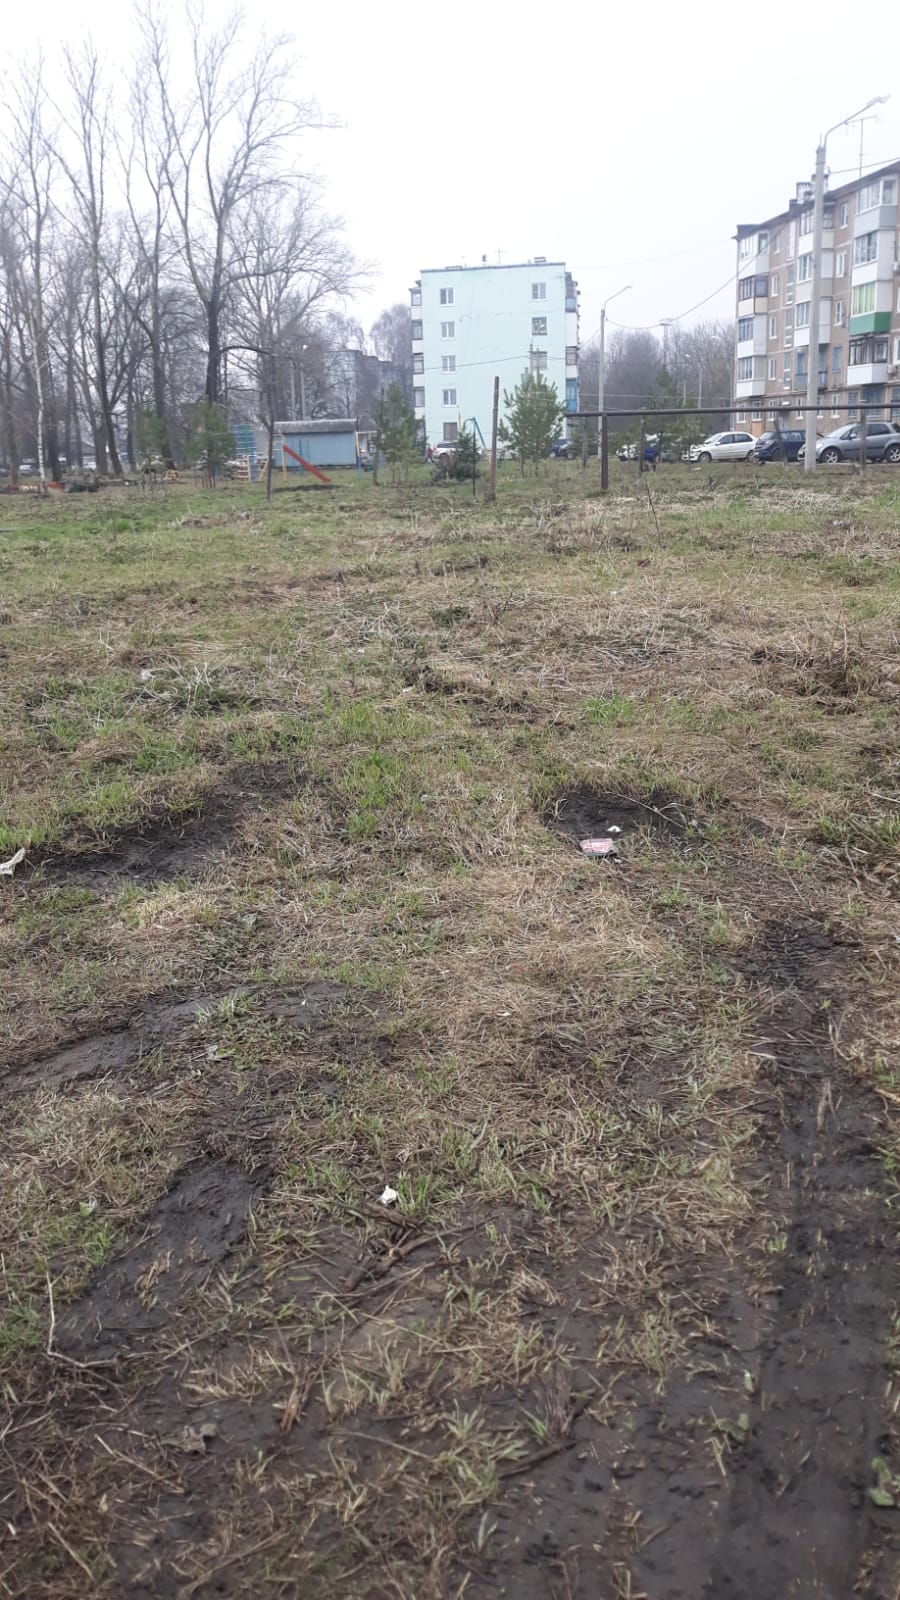 Обустройство спортивной площадки в городе Новомосковск, улица Маклец, справа от ФАПа, перед котельной